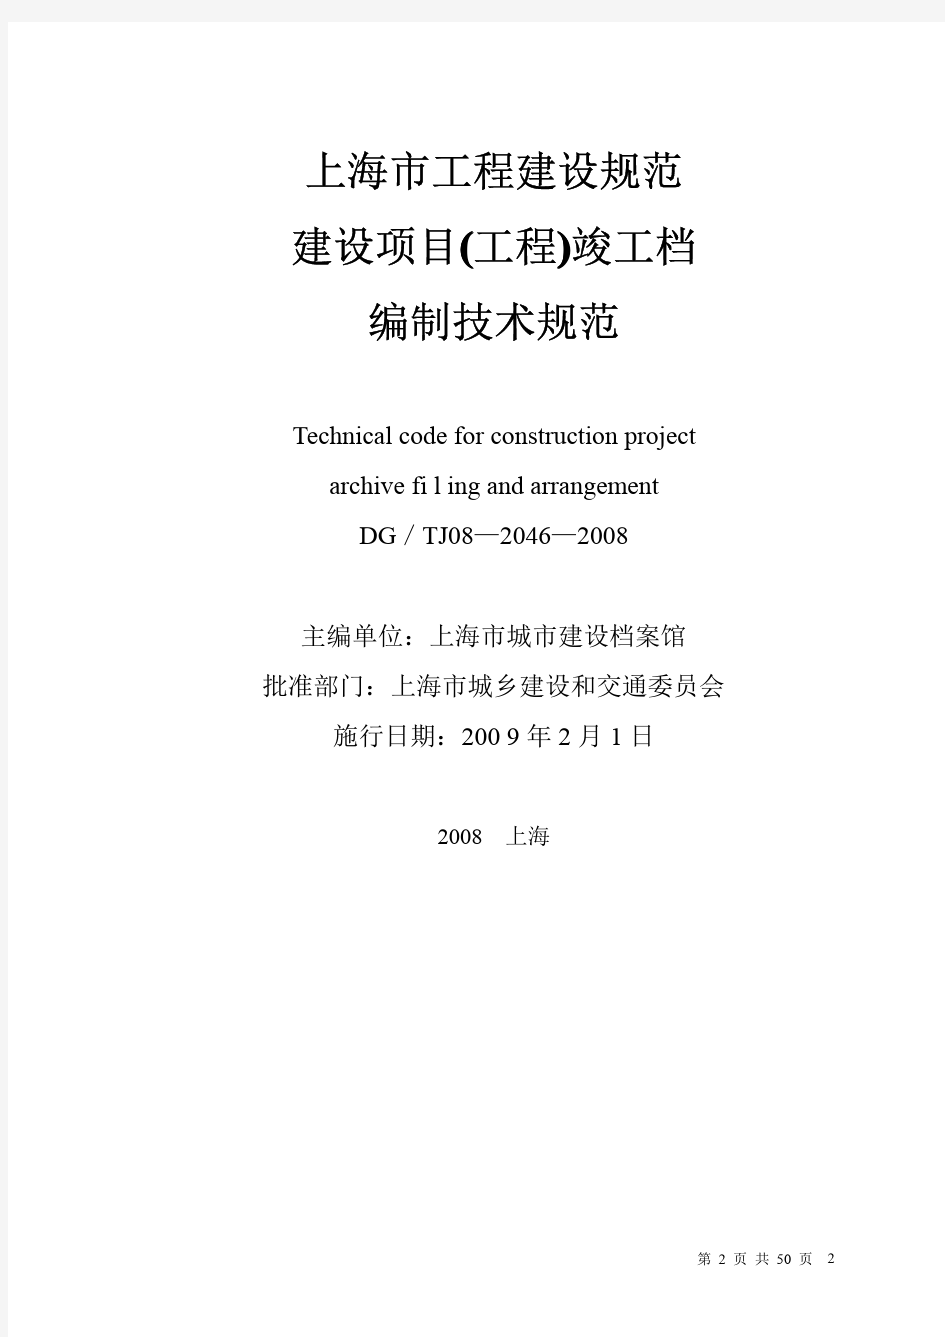 上海市建设项目(工程)竣工档案编制技术规范DGTJ08—2046—2008J11321—2008